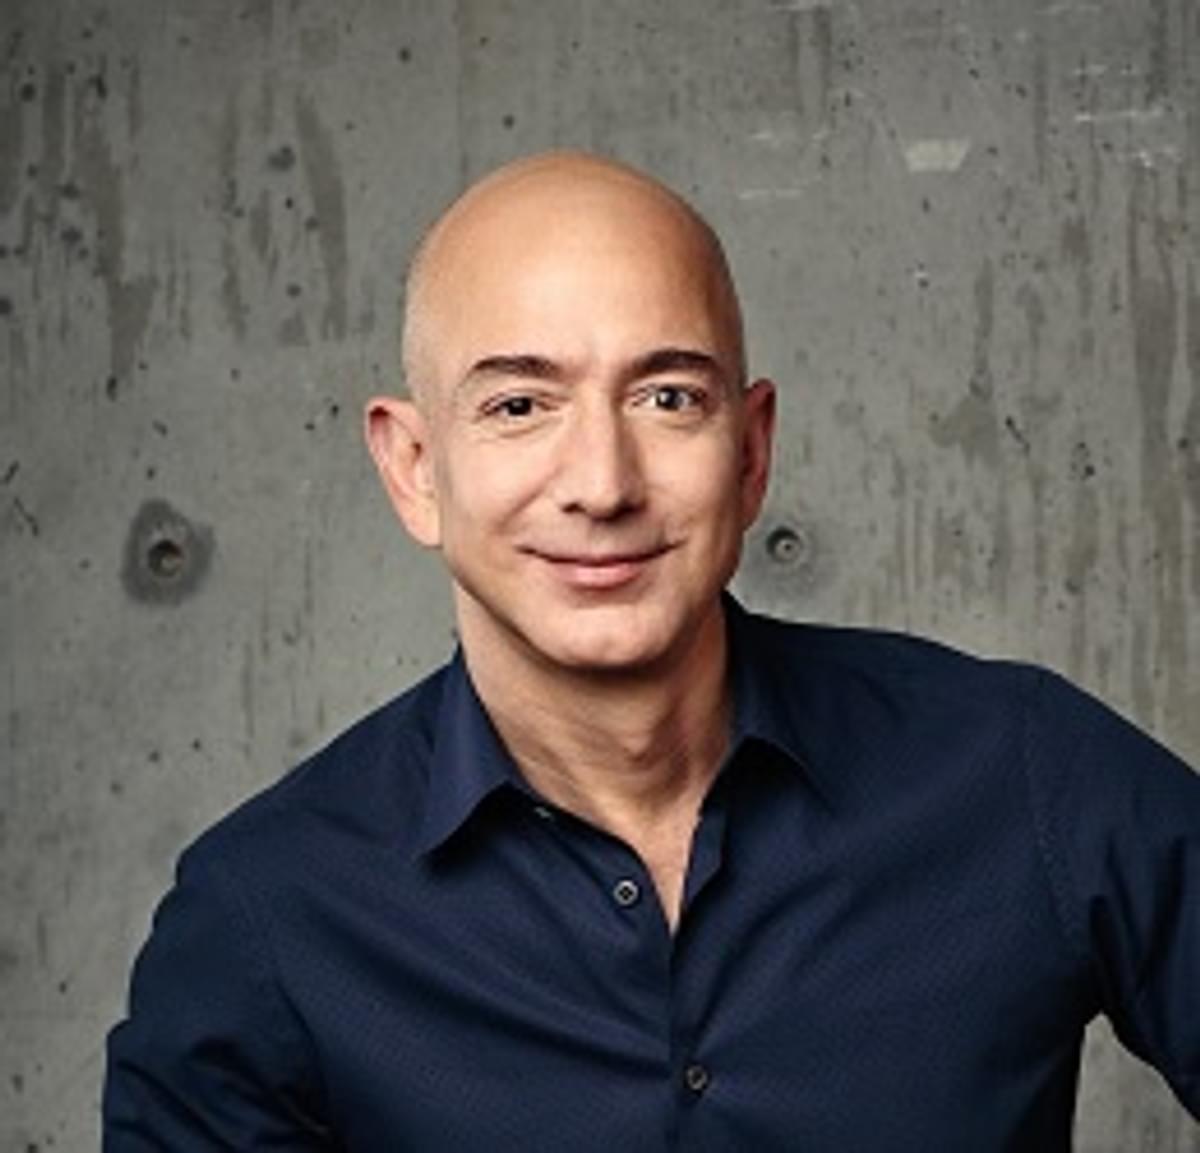 Smartphone van Amazon-CEO Jeff Bezos gehackt image